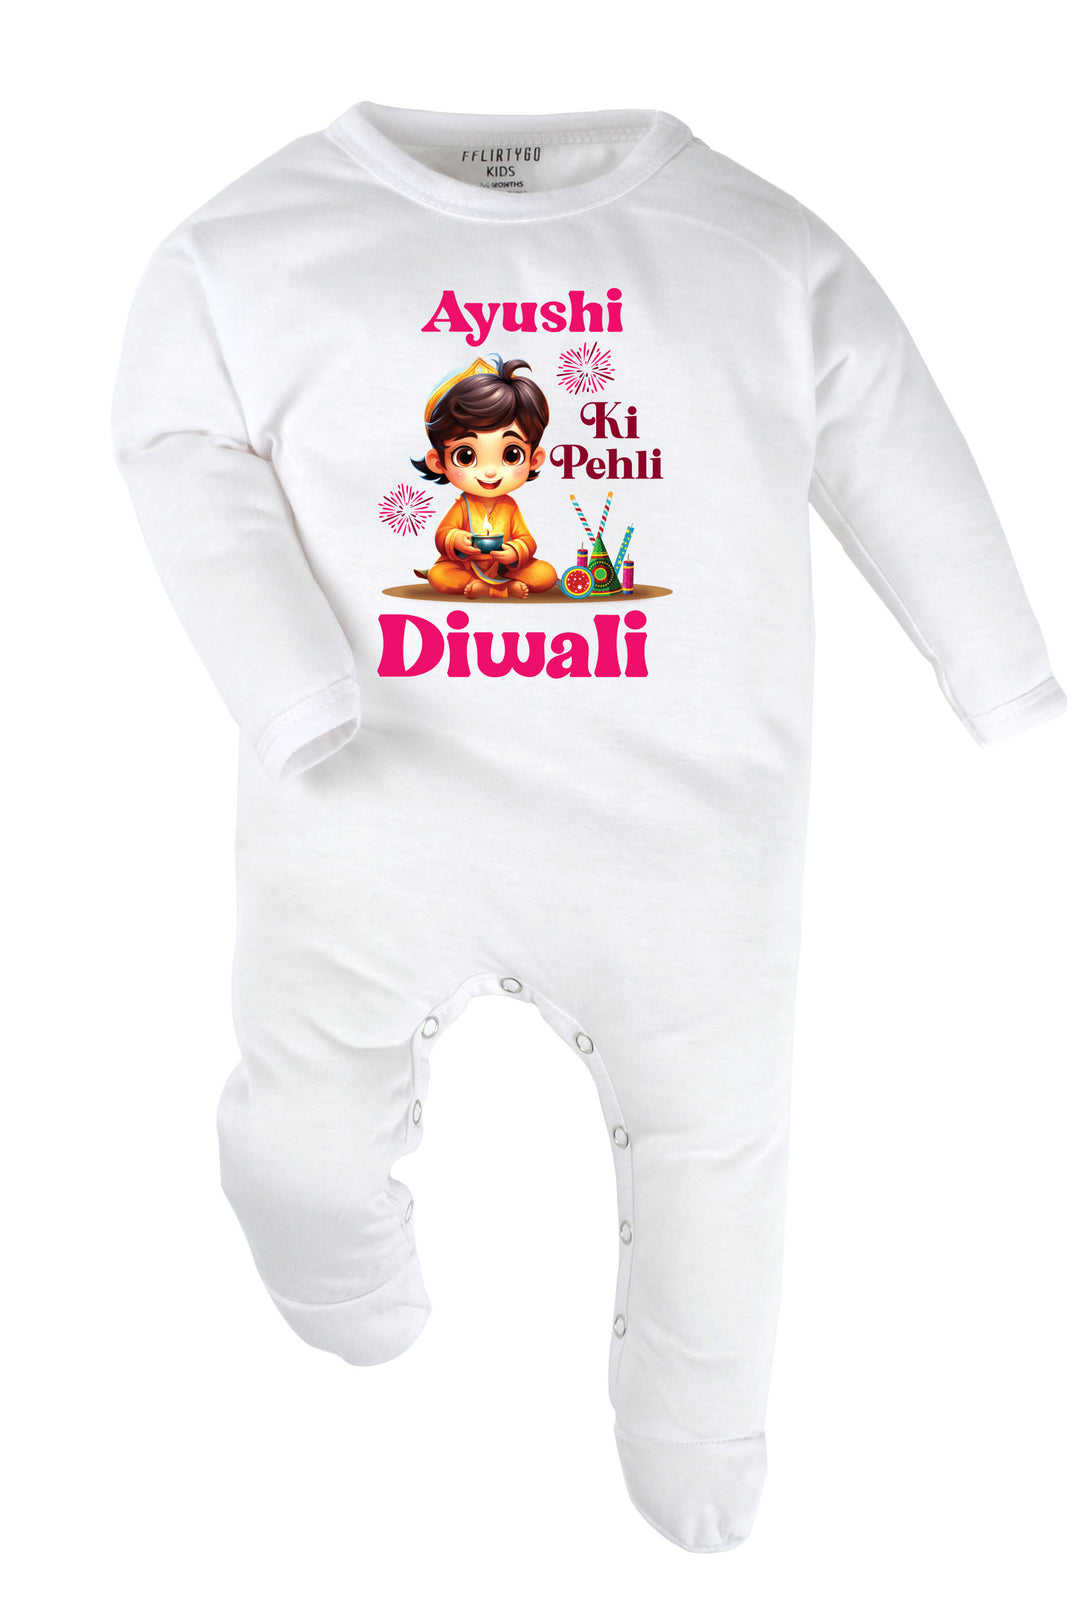 Meri Pehli Diwali Baby Romper | Onesies w/ Custom Name